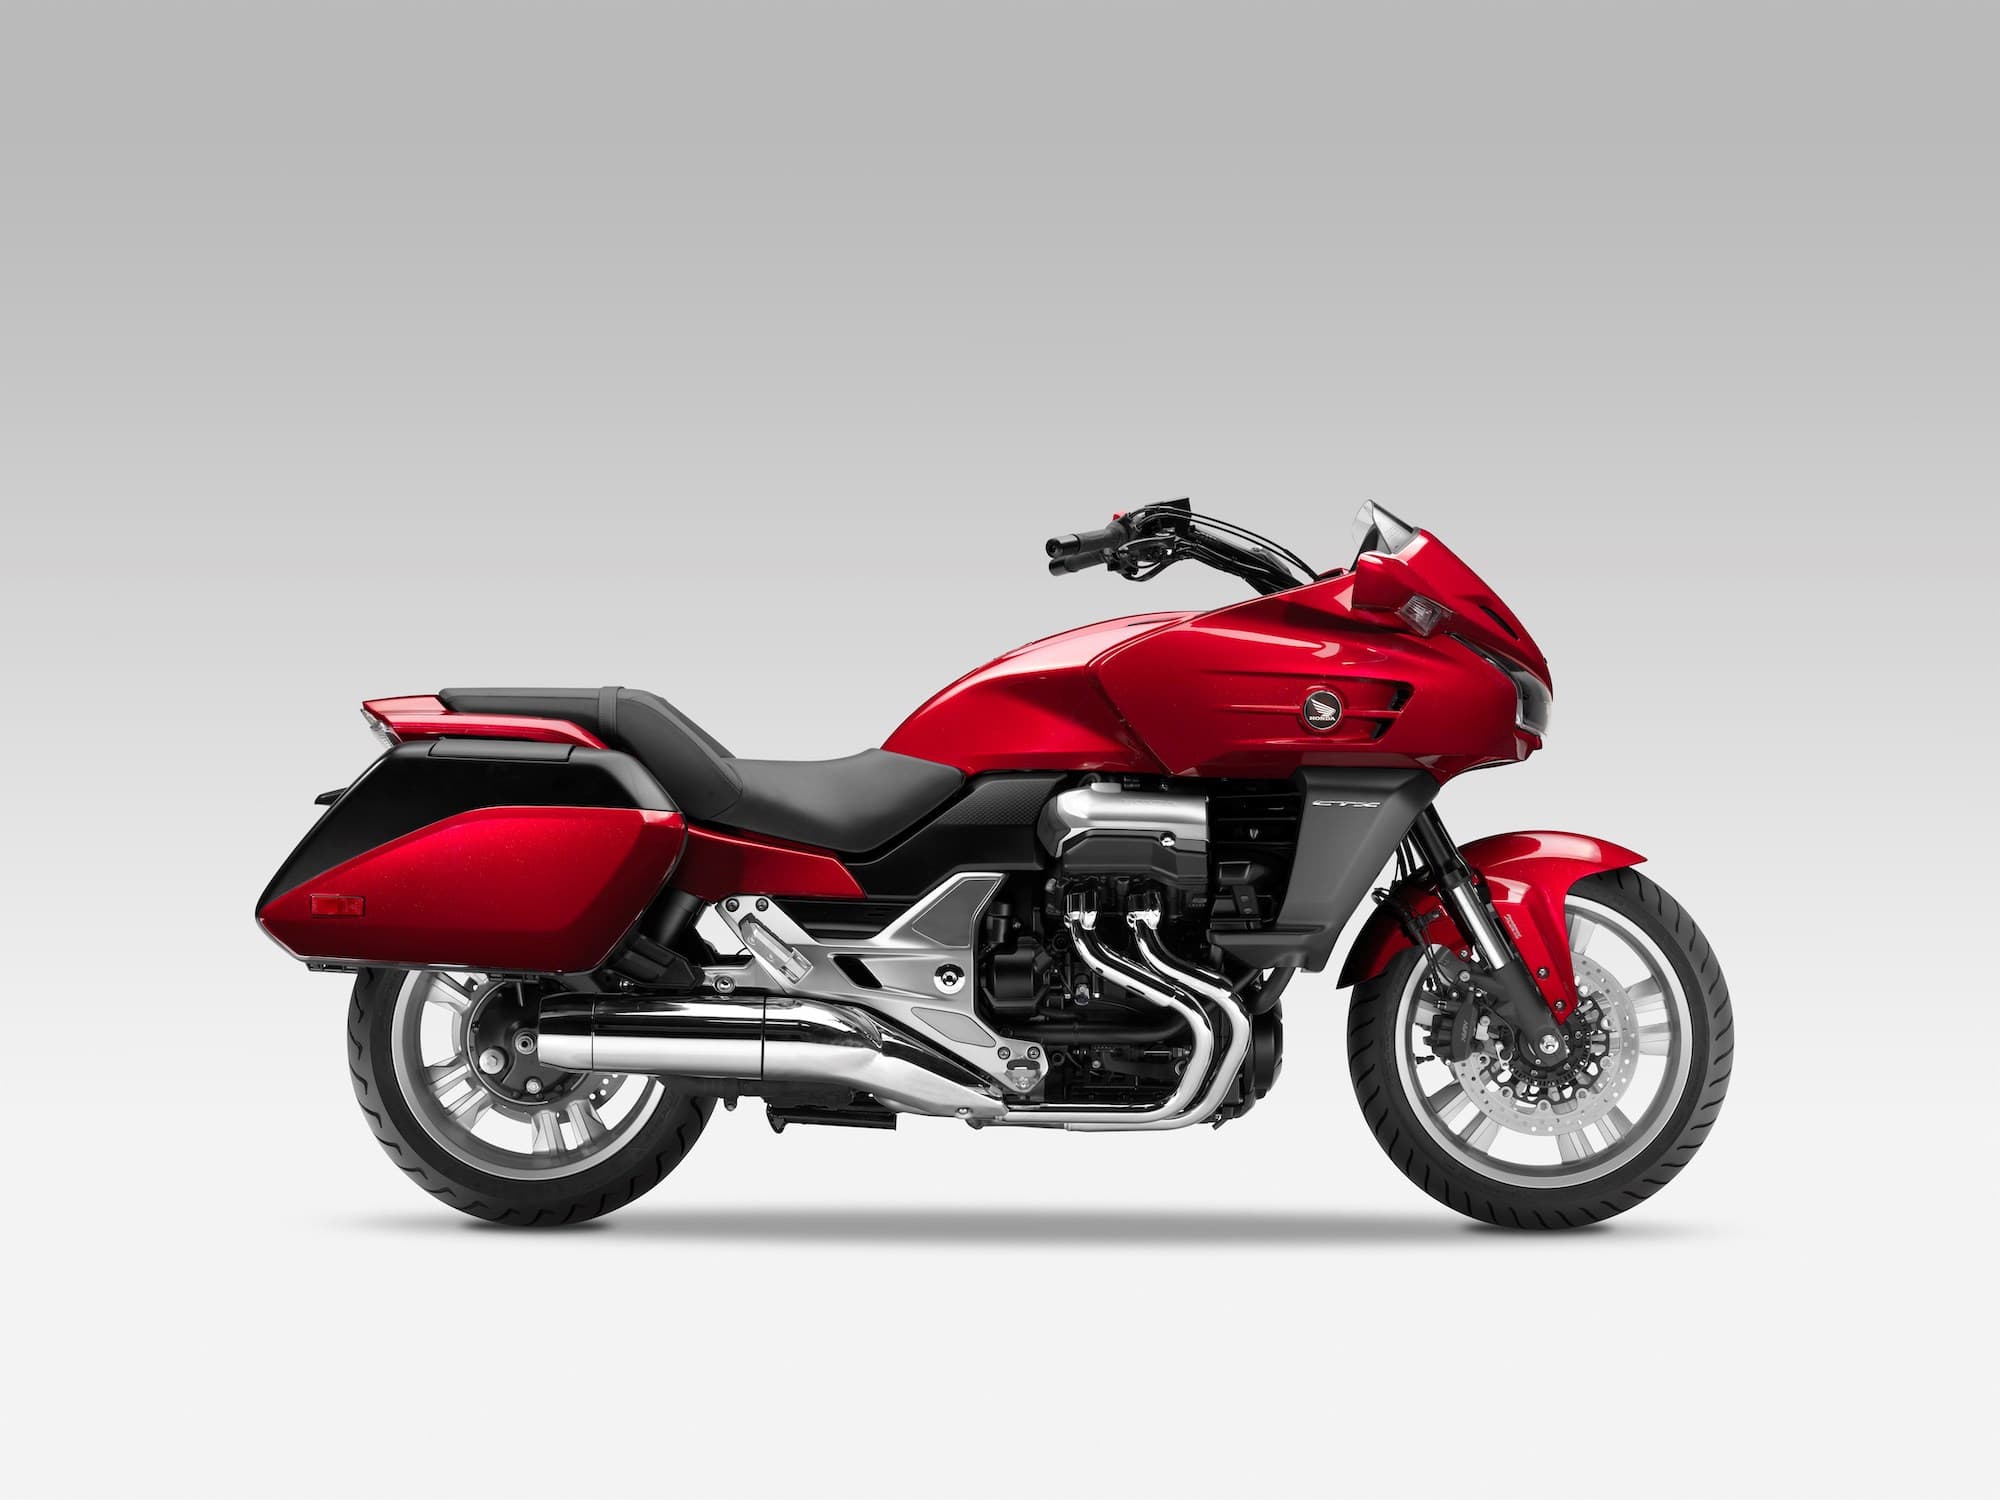 2014 Honda CTX1300 Red Studio 6